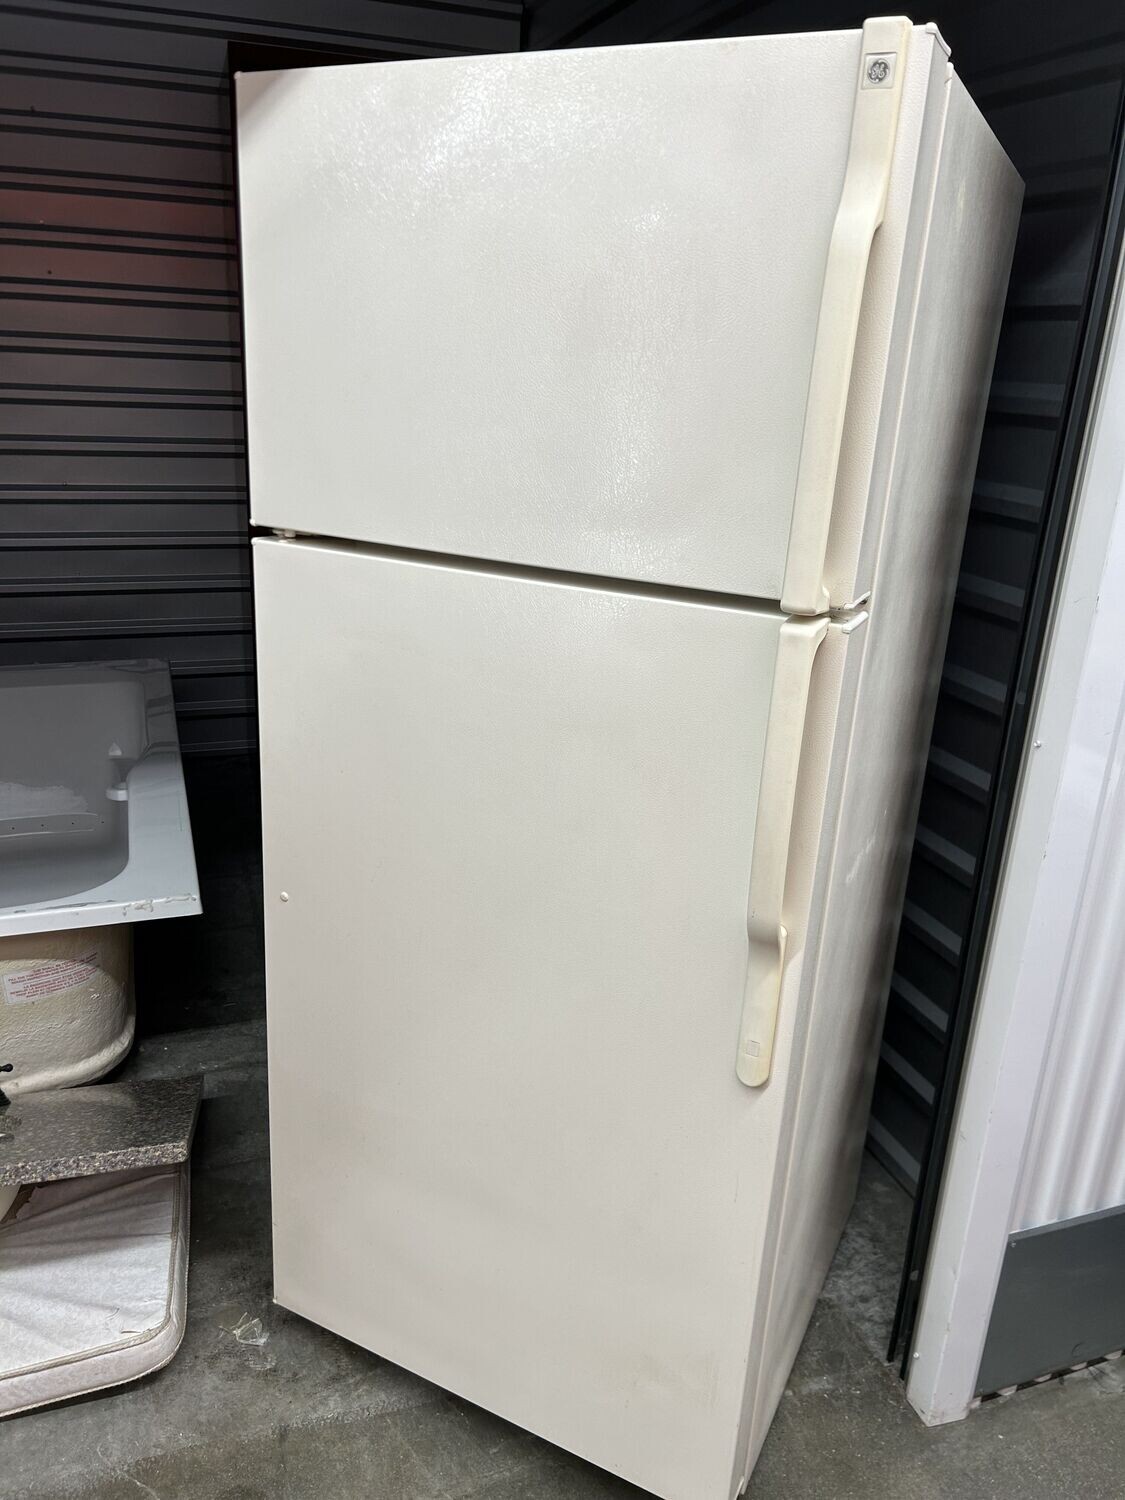 GE Refrigerator, top freezer, beige, SN 773495 #1172